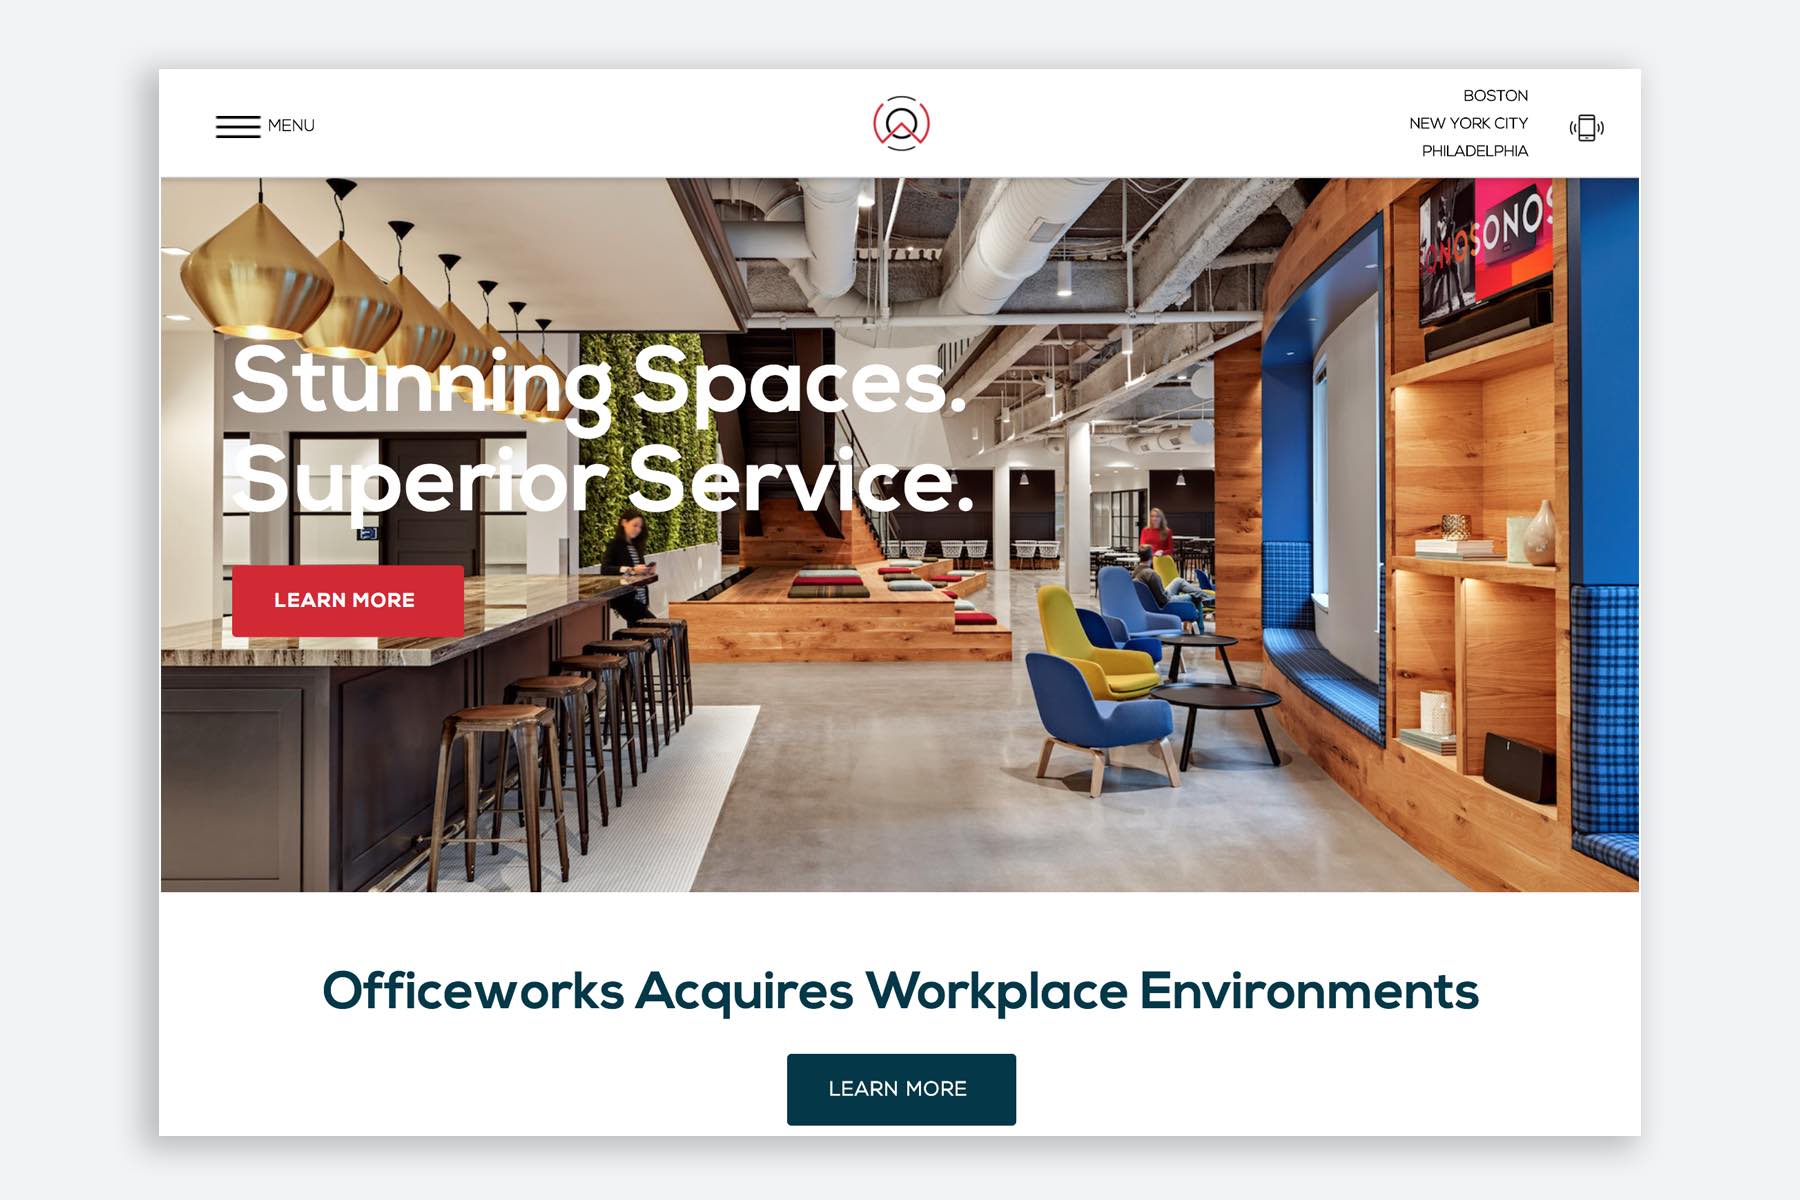 Officeworks website rebranding strategy